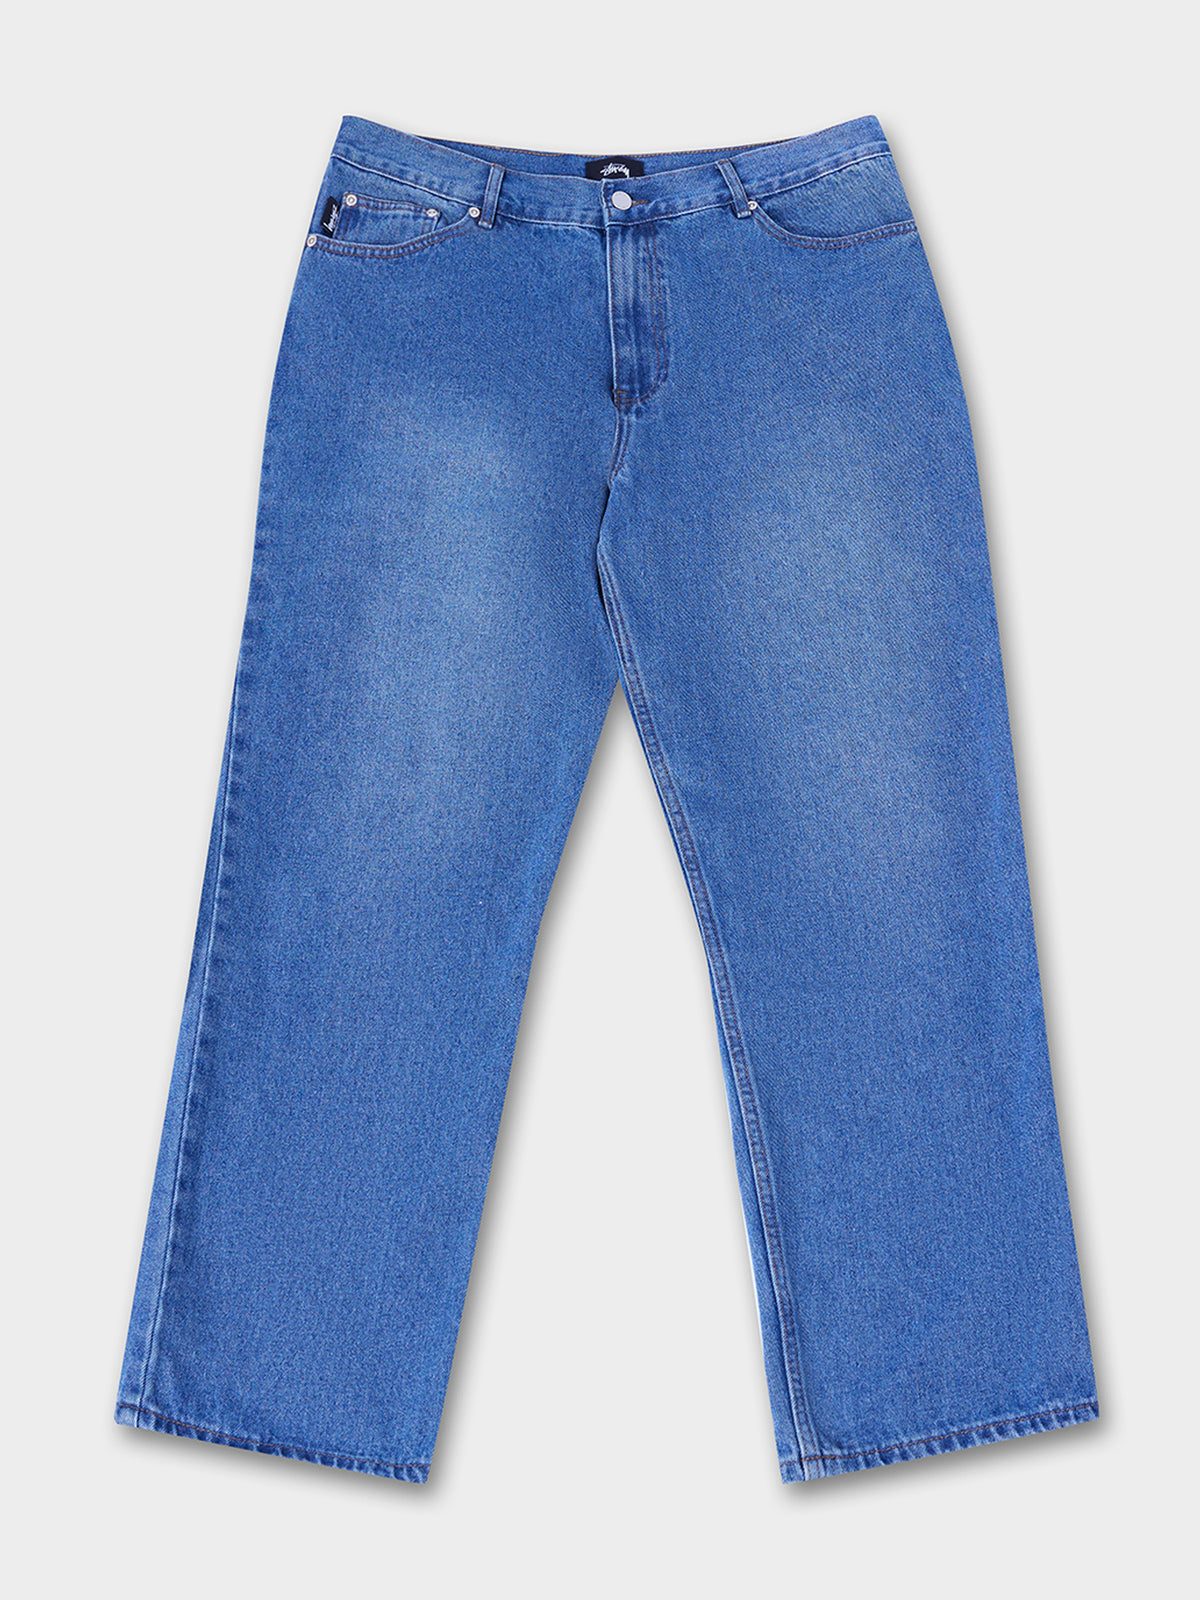 Stussy Big Ol' Jeans | Washed Blue